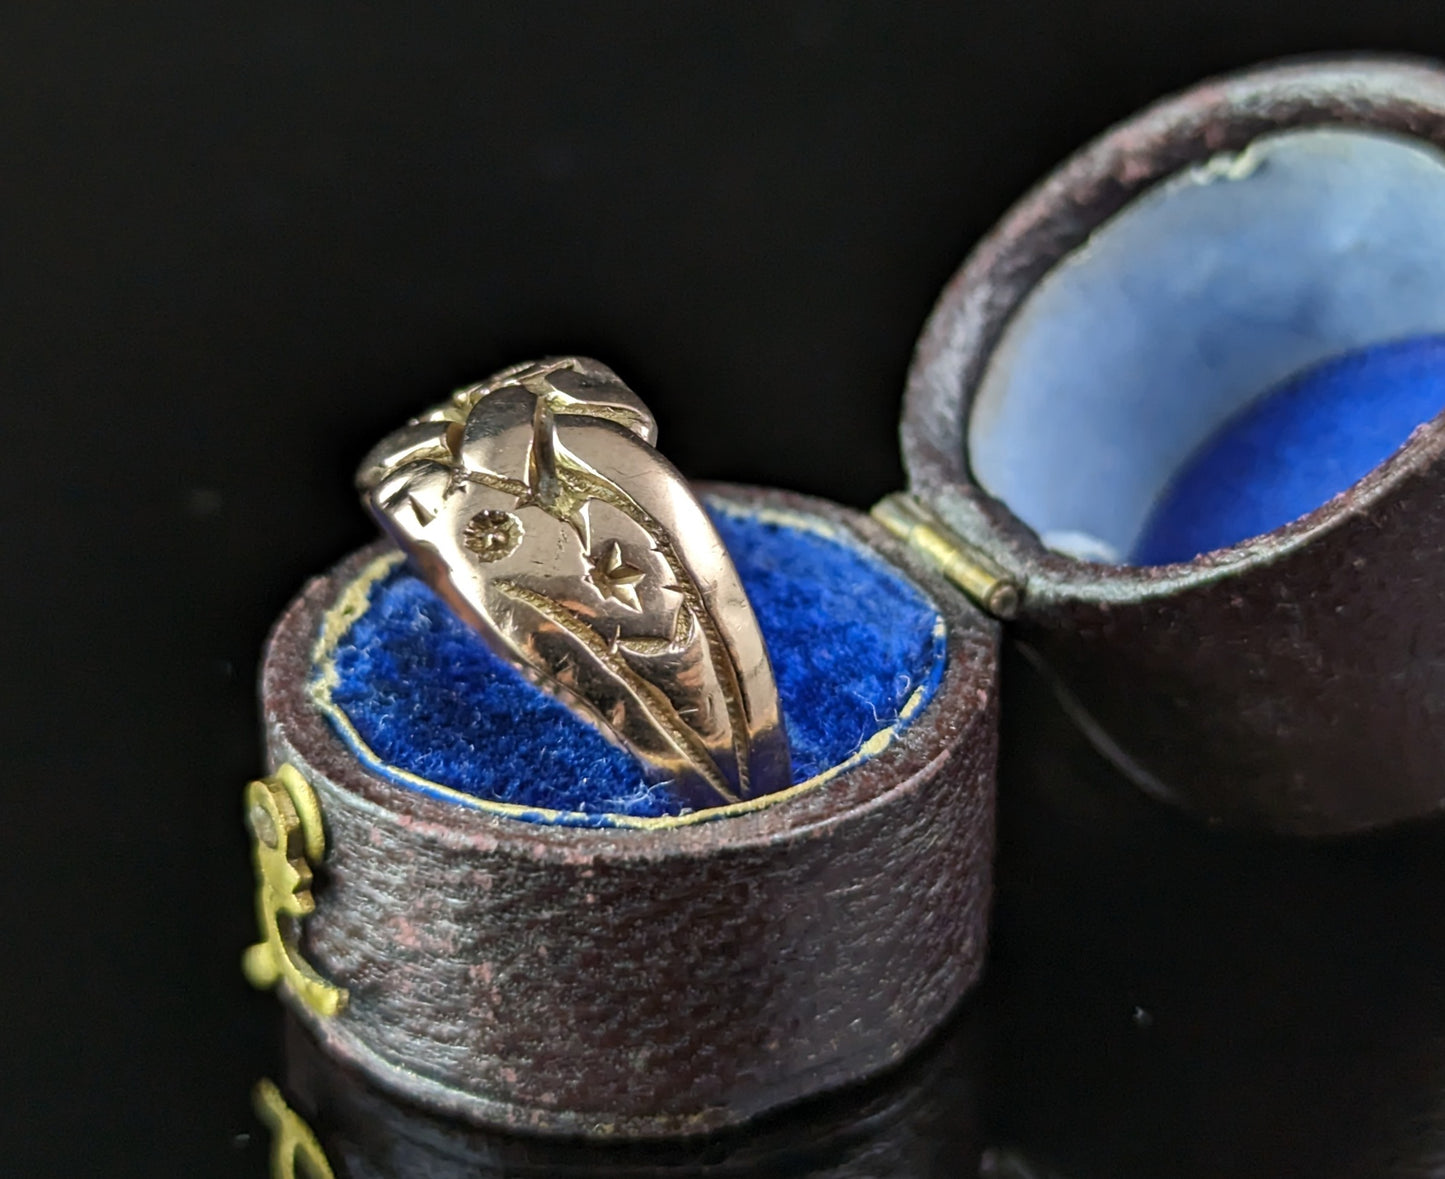 Antique 9k rose gold engraved band ring, Art Deco